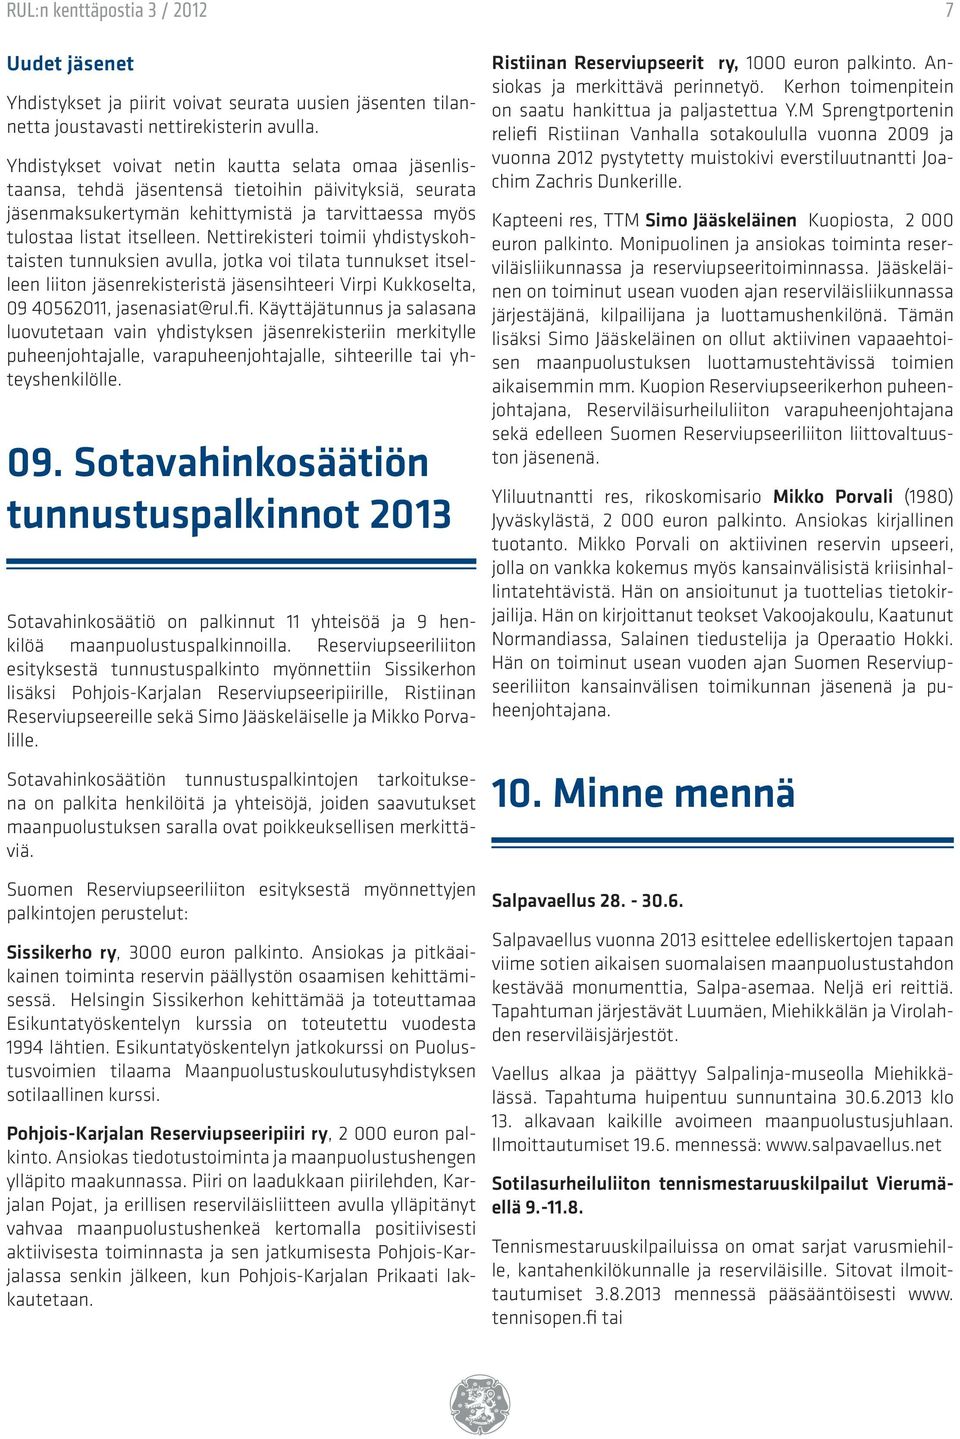 Nettirekisteri toimii yhdistyskohtaisten tunnuksien avulla, jotka voi tilata tunnukset itselleen liiton jäsenrekisteristä jäsensihteeri Virpi Kukkoselta, 09 40562011, jasenasiat@rul.fi.